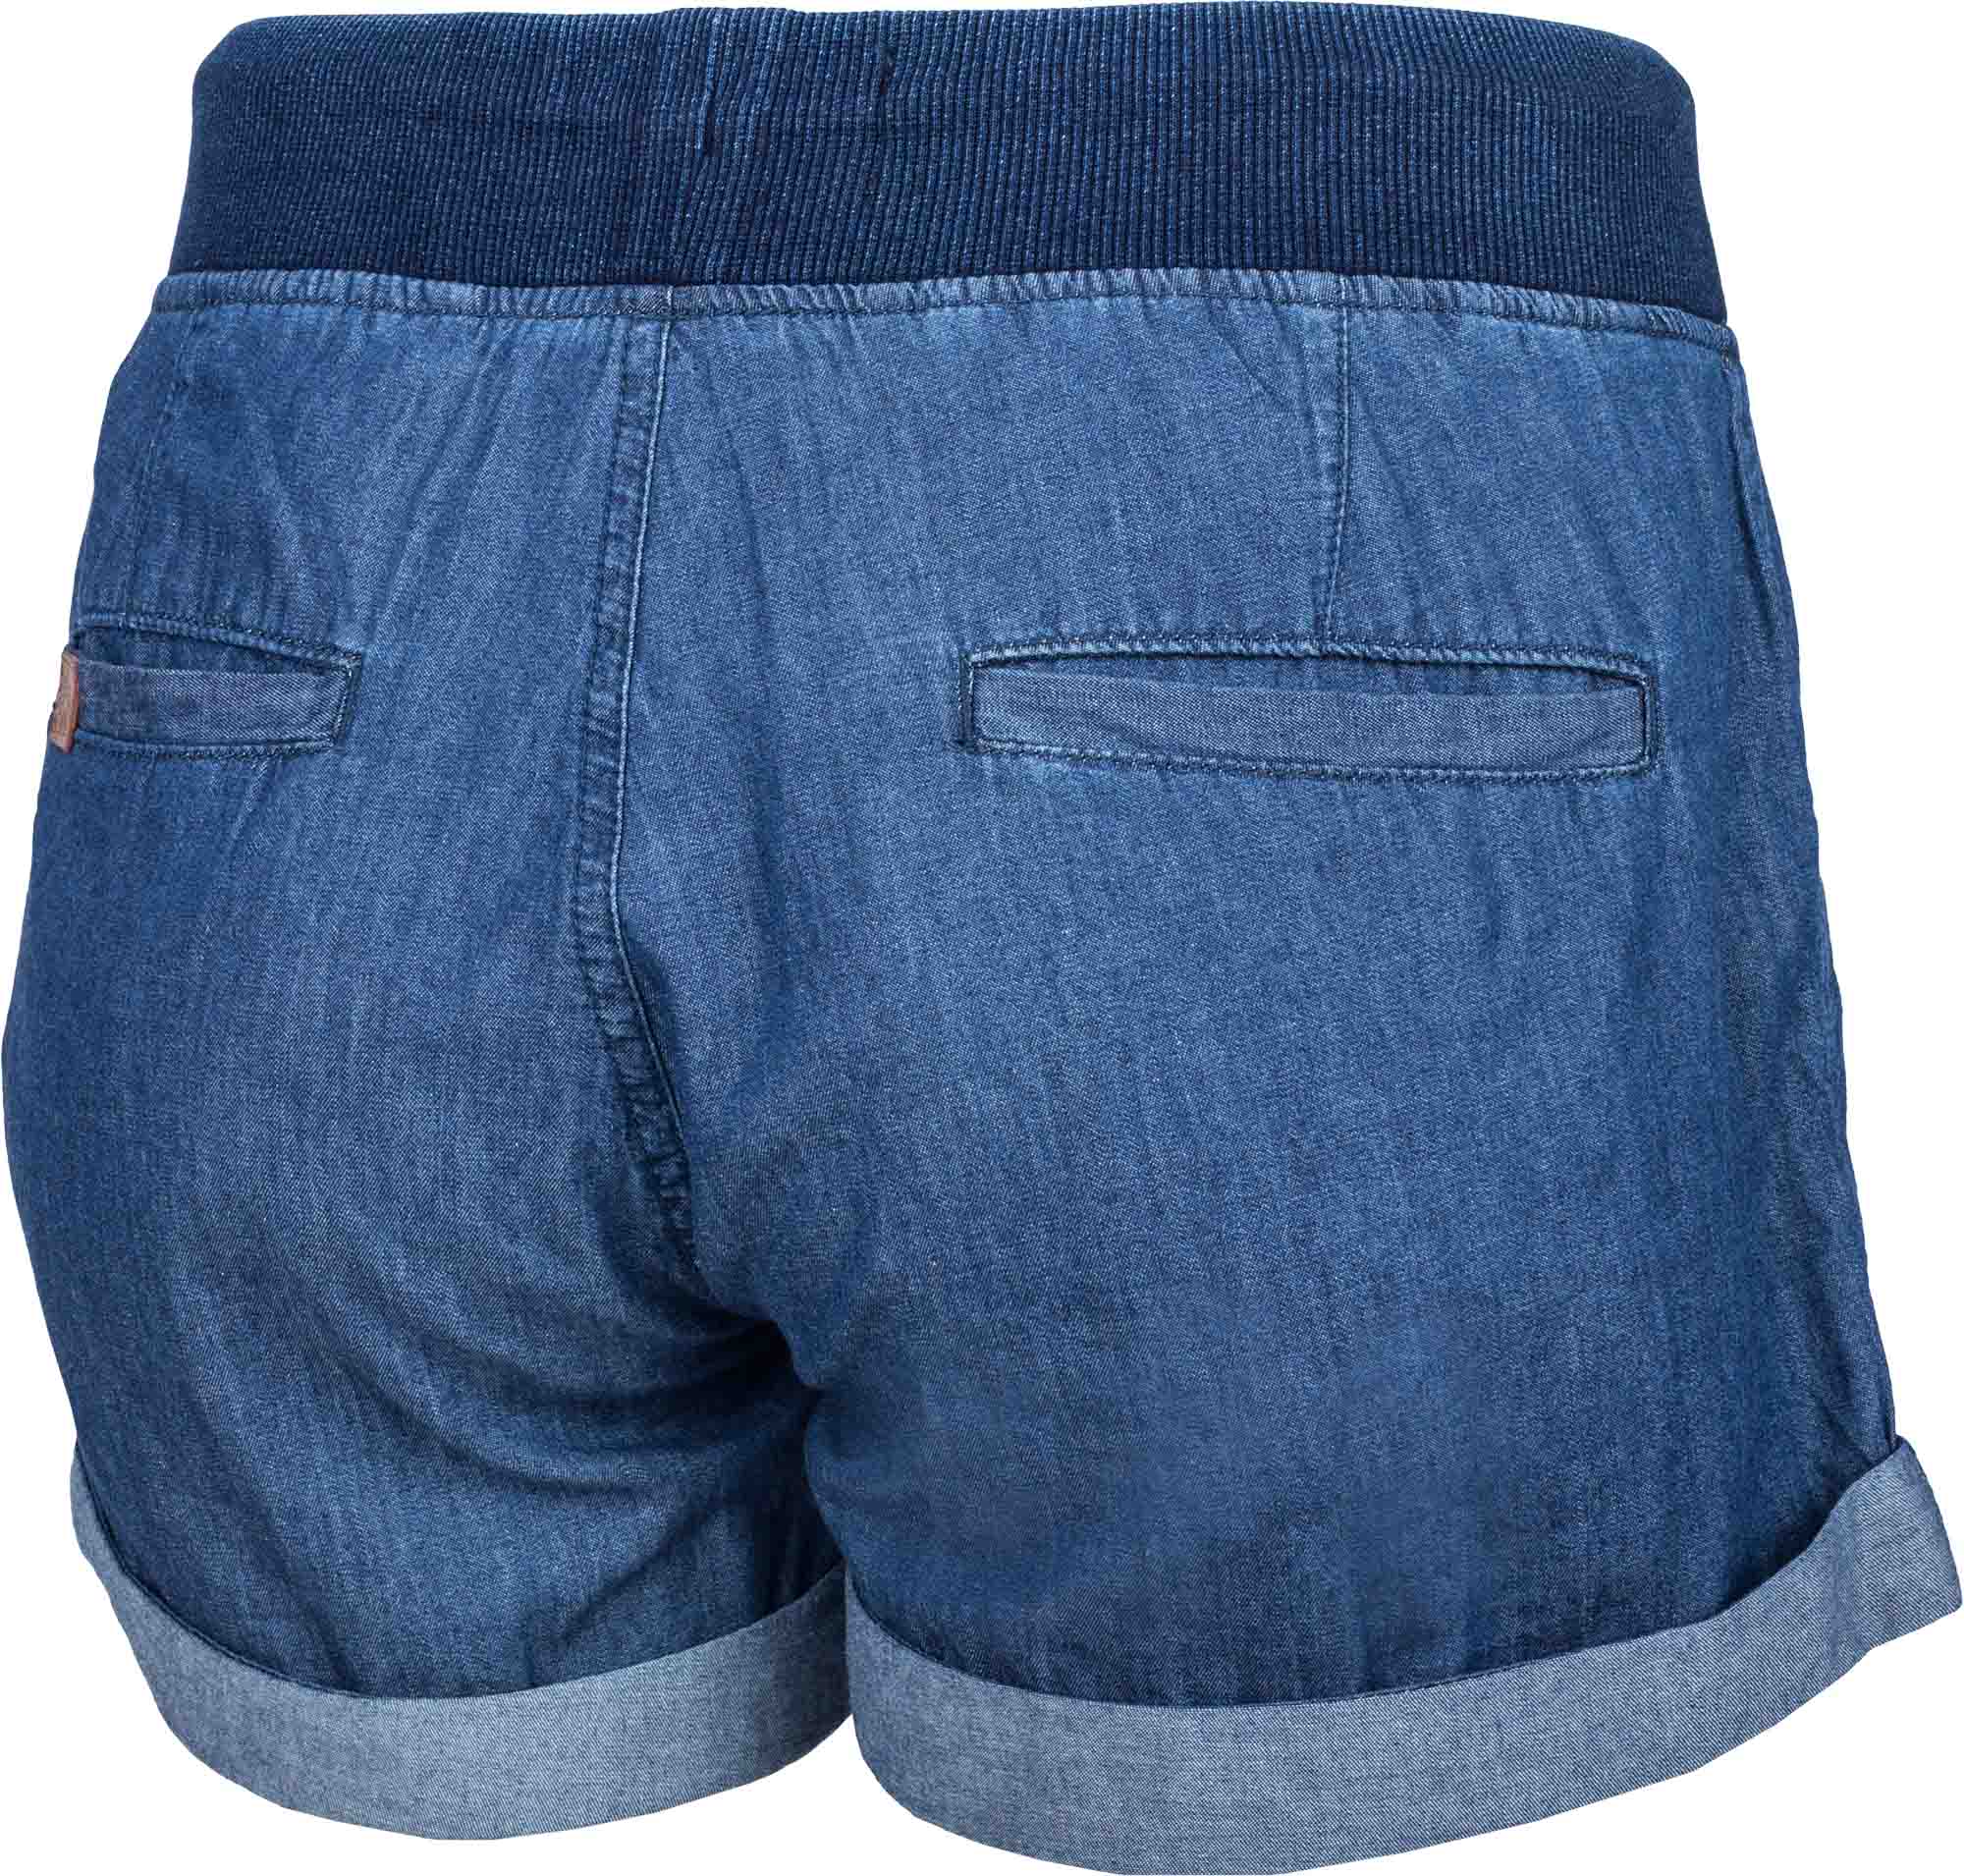 Dámske plátené šortky džínsového vzhľadu